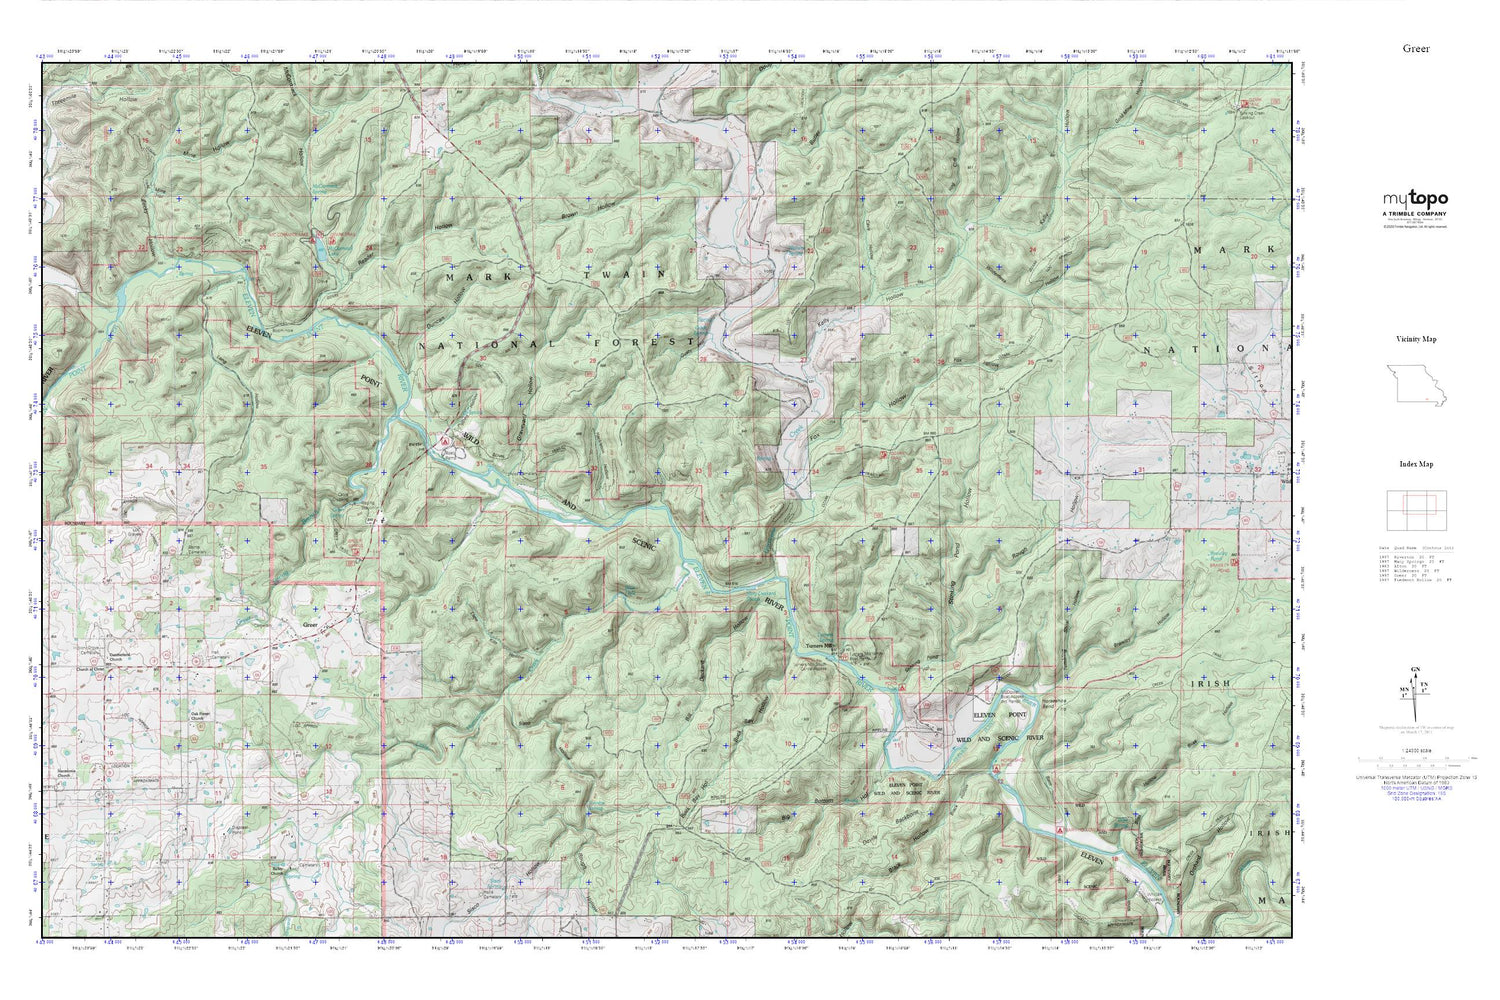 Greer MyTopo Explorer Series Map Image